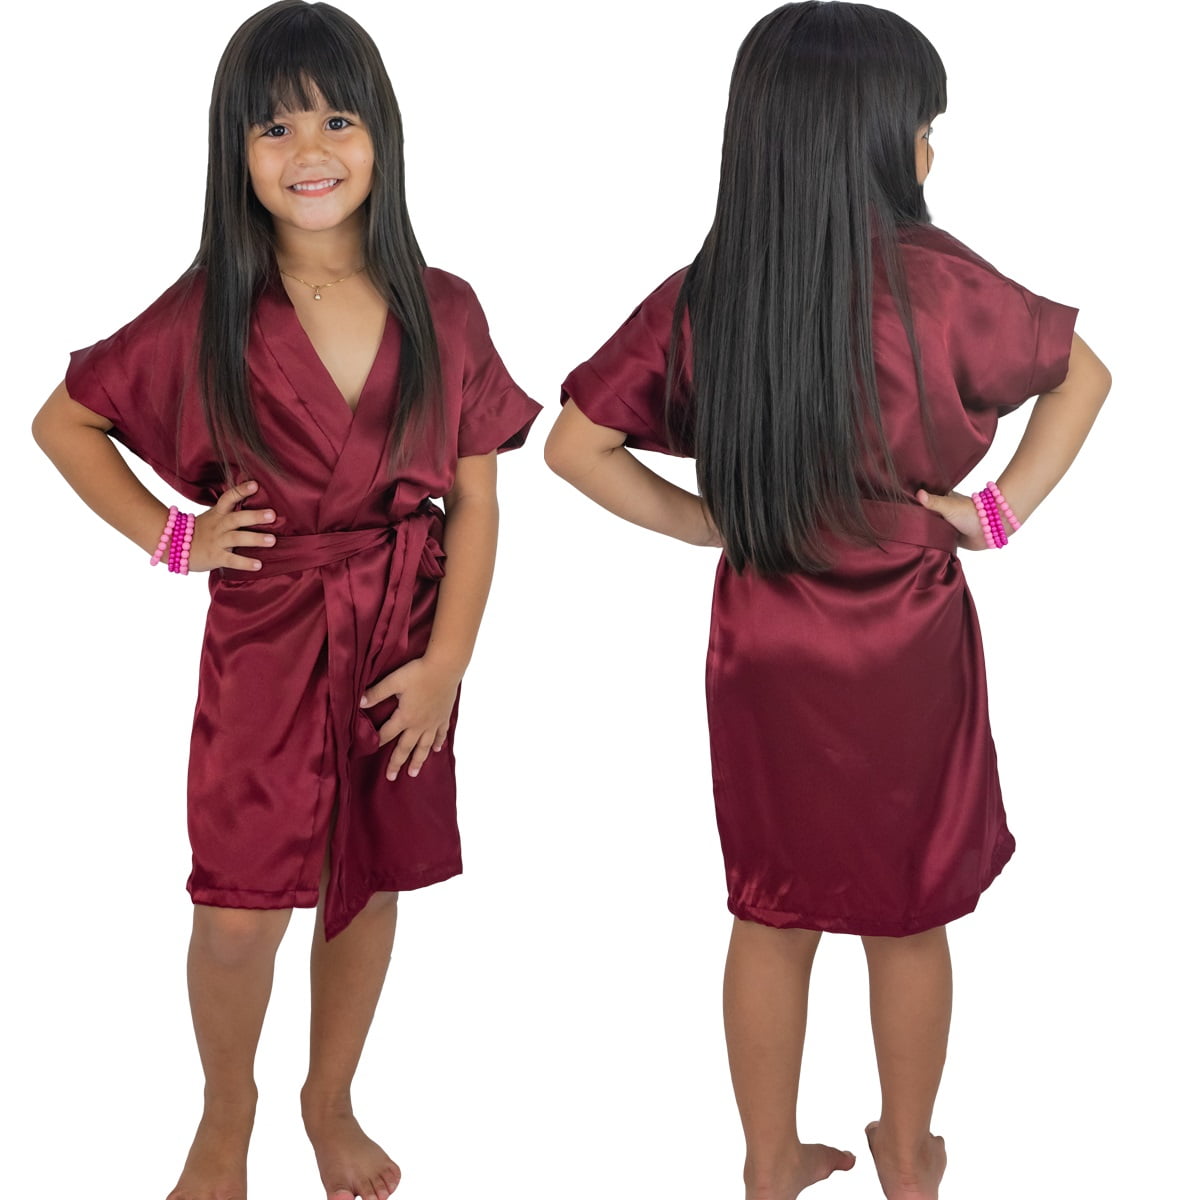 Robe Infantil Feminino de Cetim Com Elastano Roupão Vinho Marsala